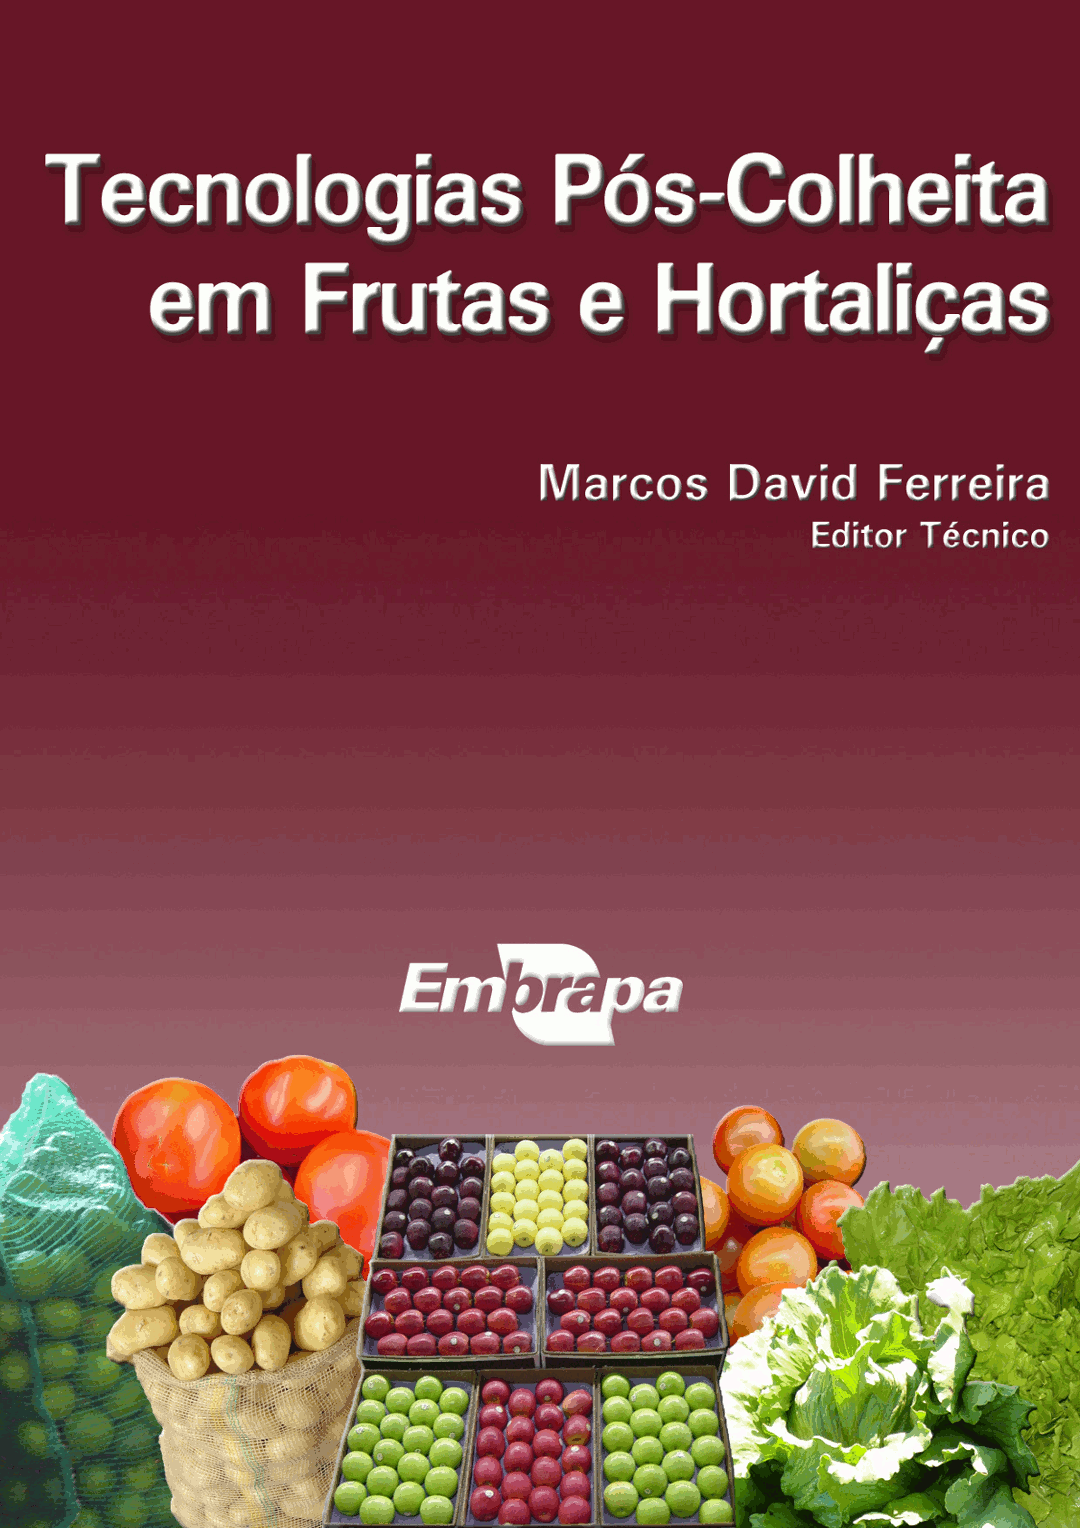 File:Dominó das Frutas Cítricas - Parte 1.png - Wikimedia Commons